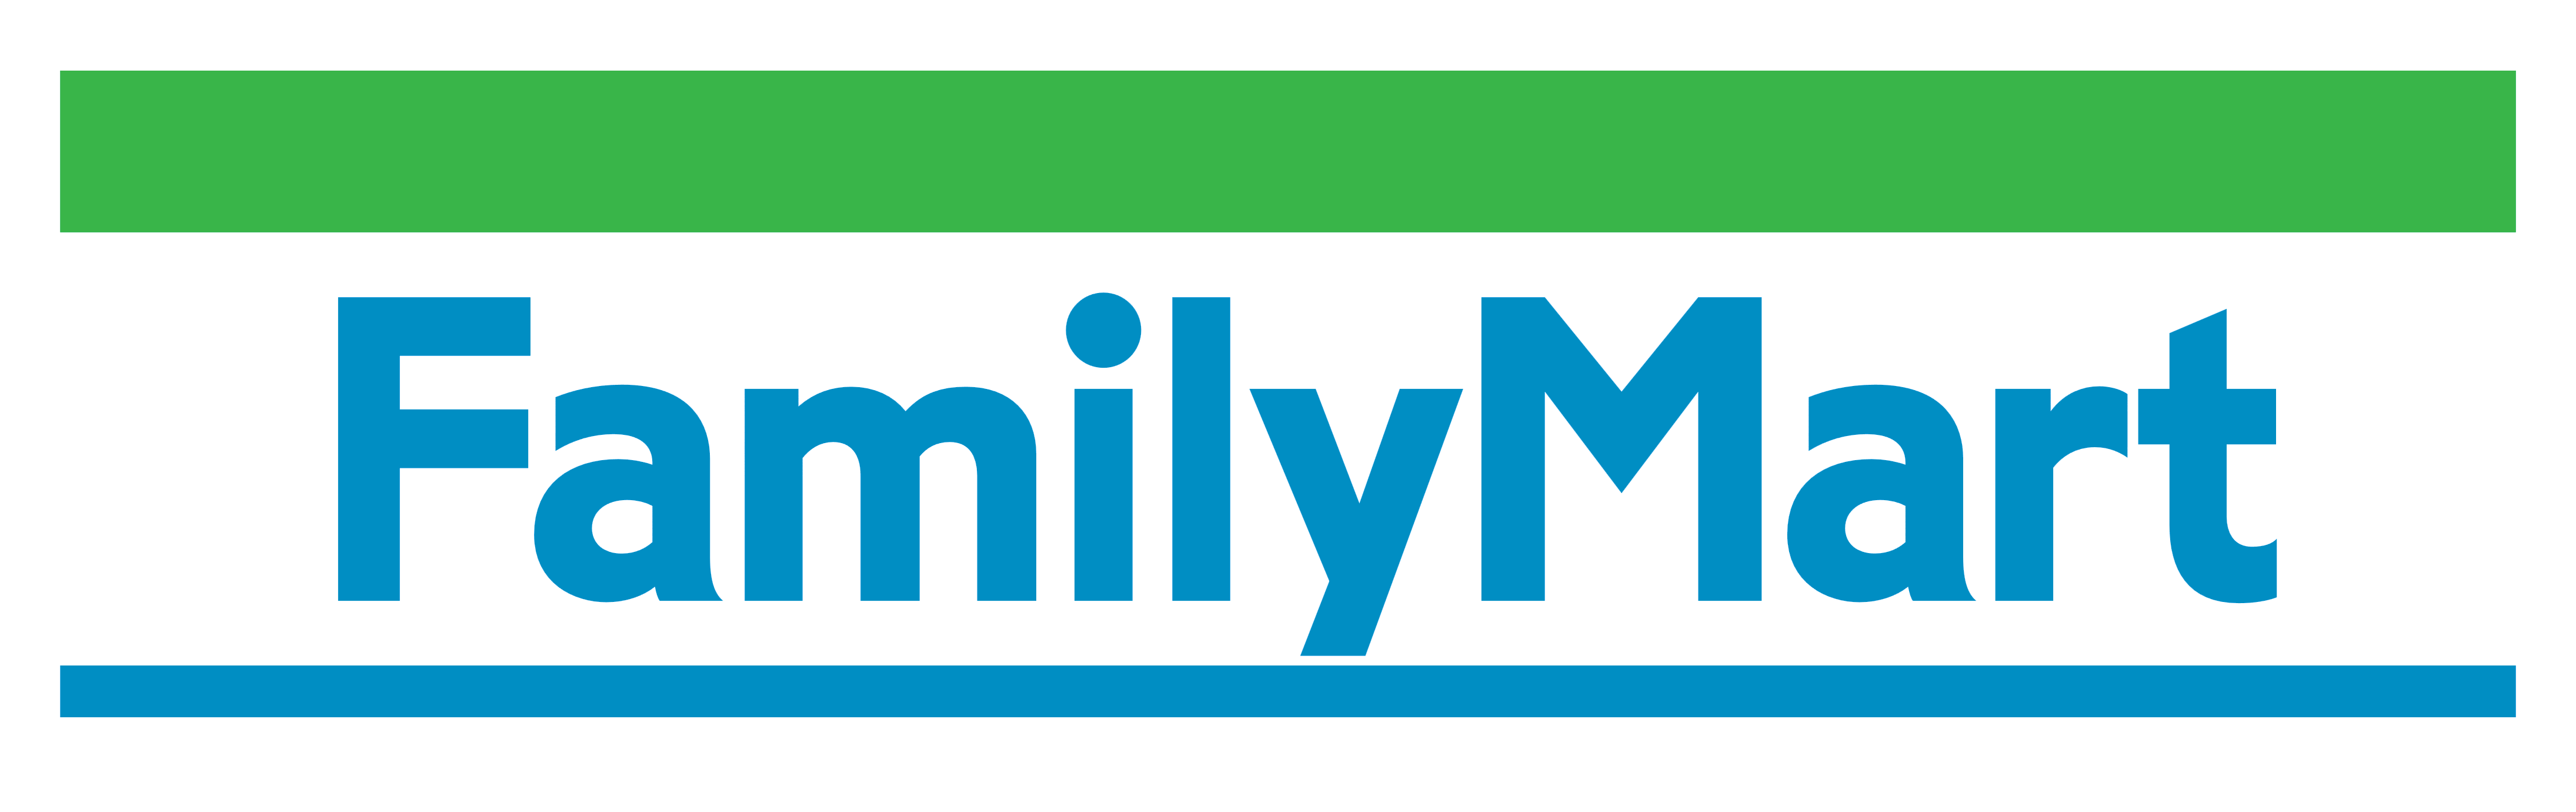 Family mart. Family Mart Japan. Family Mart Thailand. Udn logo.